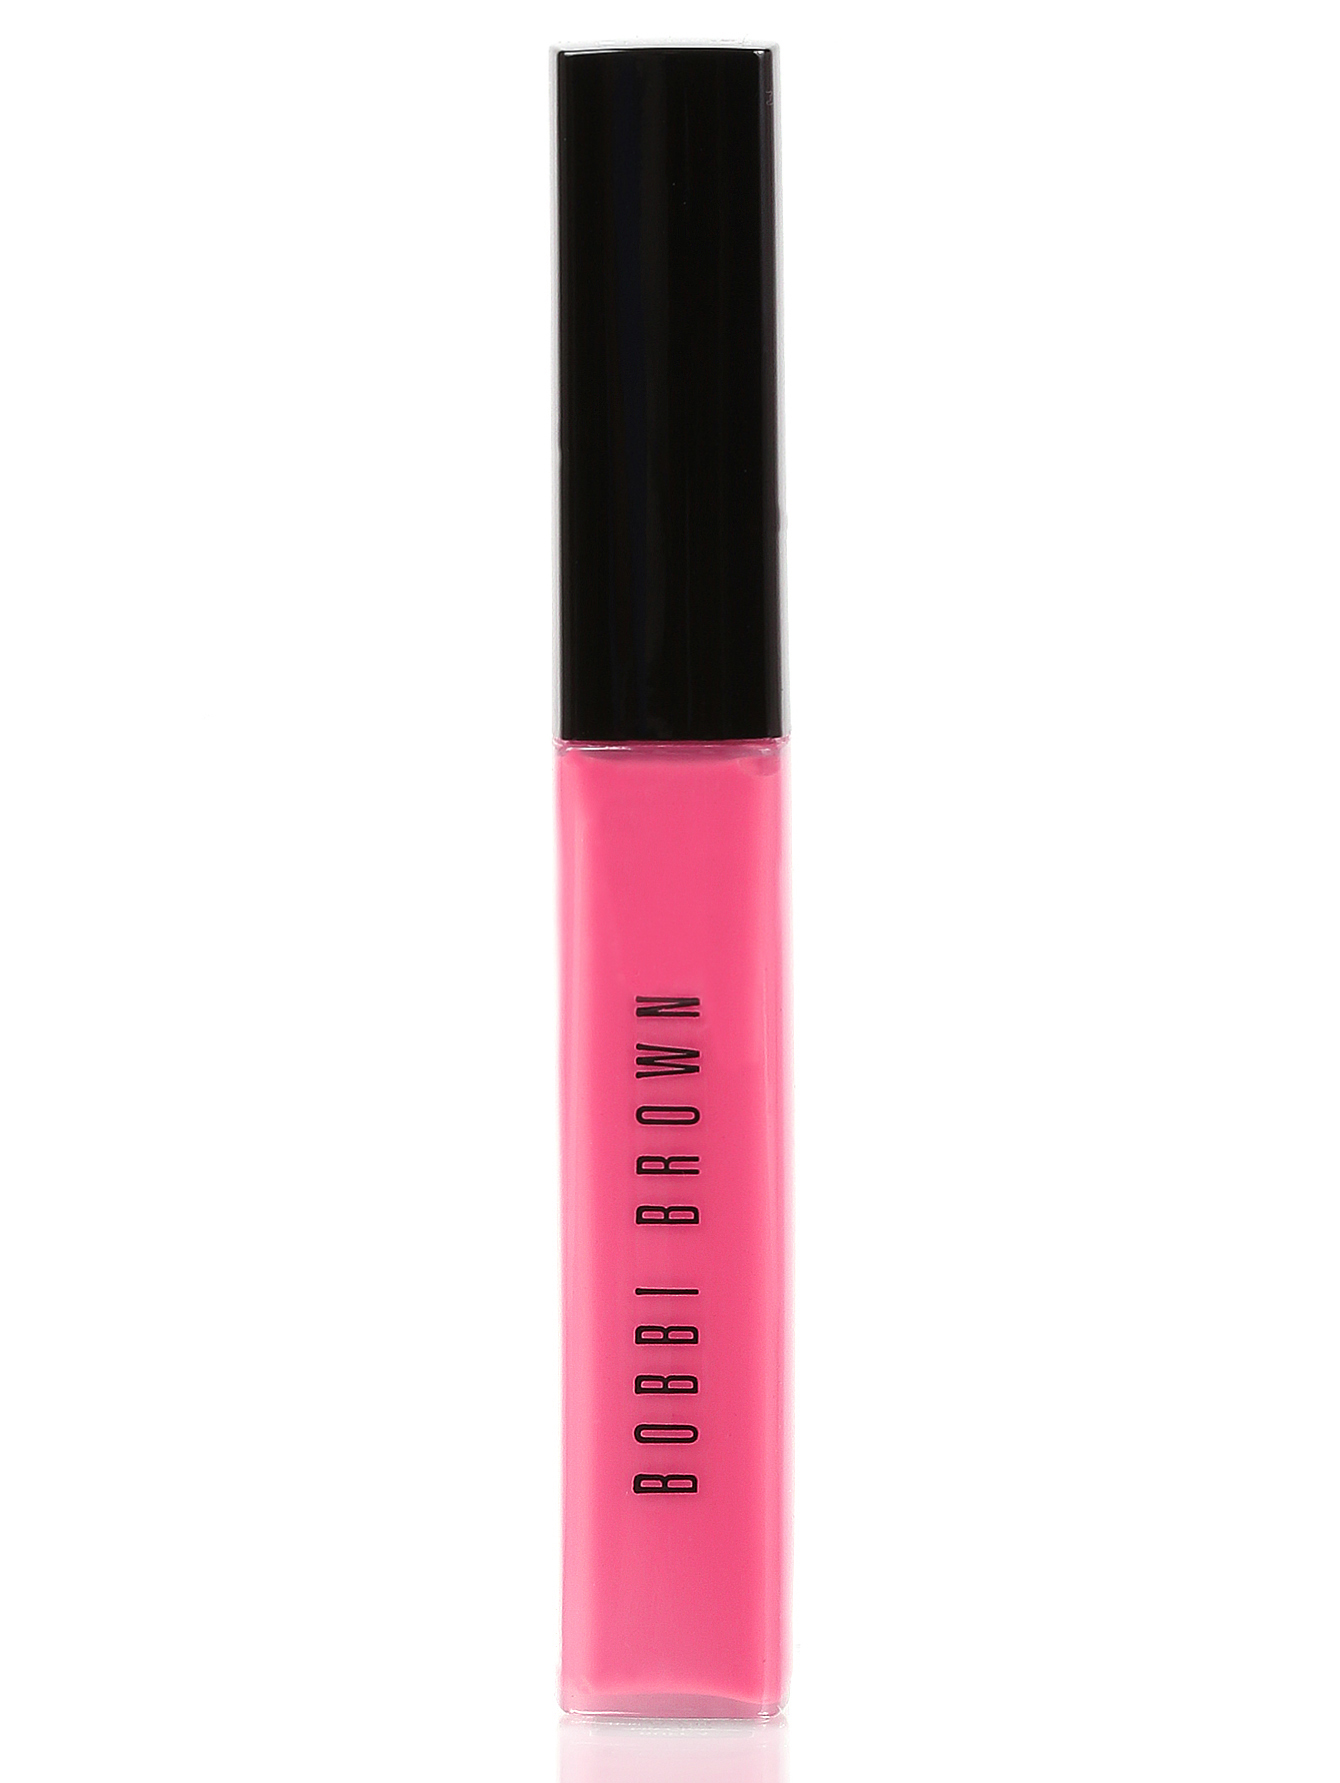 Блеск для губ - Hot Pink, Lip Gloss - Общий вид